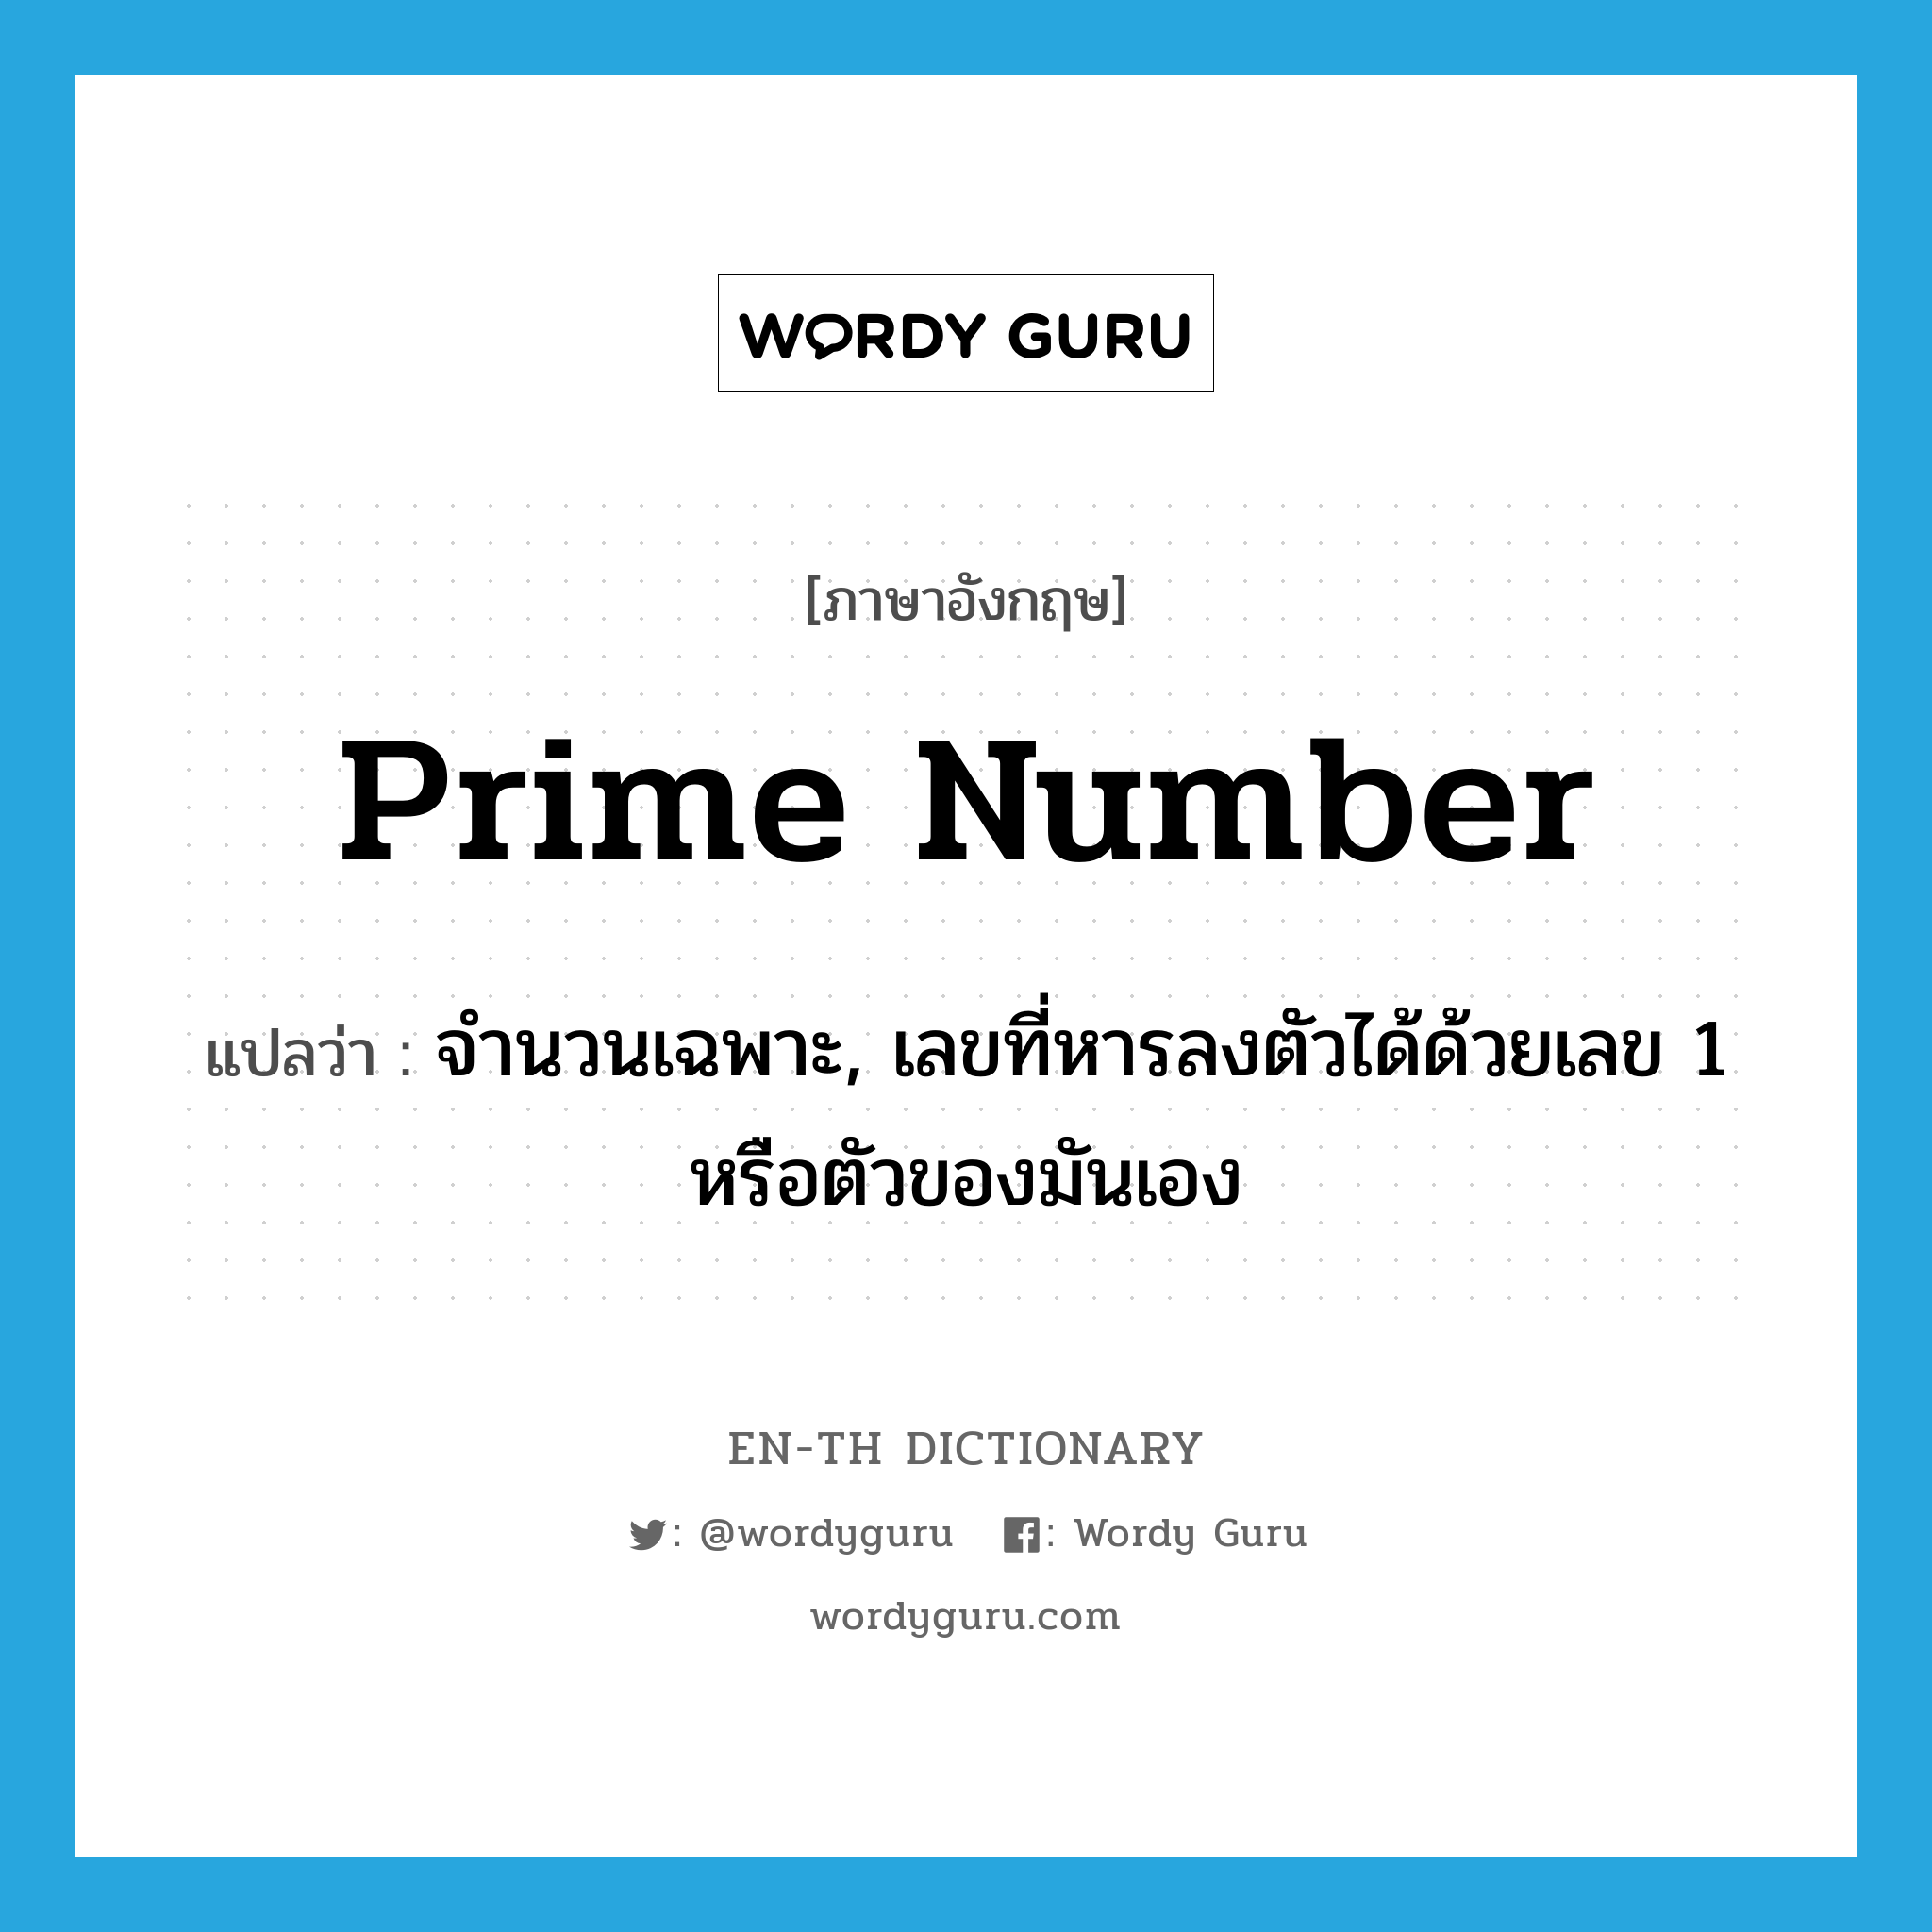 prime number แปลว่า?, คำศัพท์ภาษาอังกฤษ prime number แปลว่า จำนวนเฉพาะ, เลขที่หารลงตัวได้ด้วยเลข 1 หรือตัวของมันเอง ประเภท N หมวด N